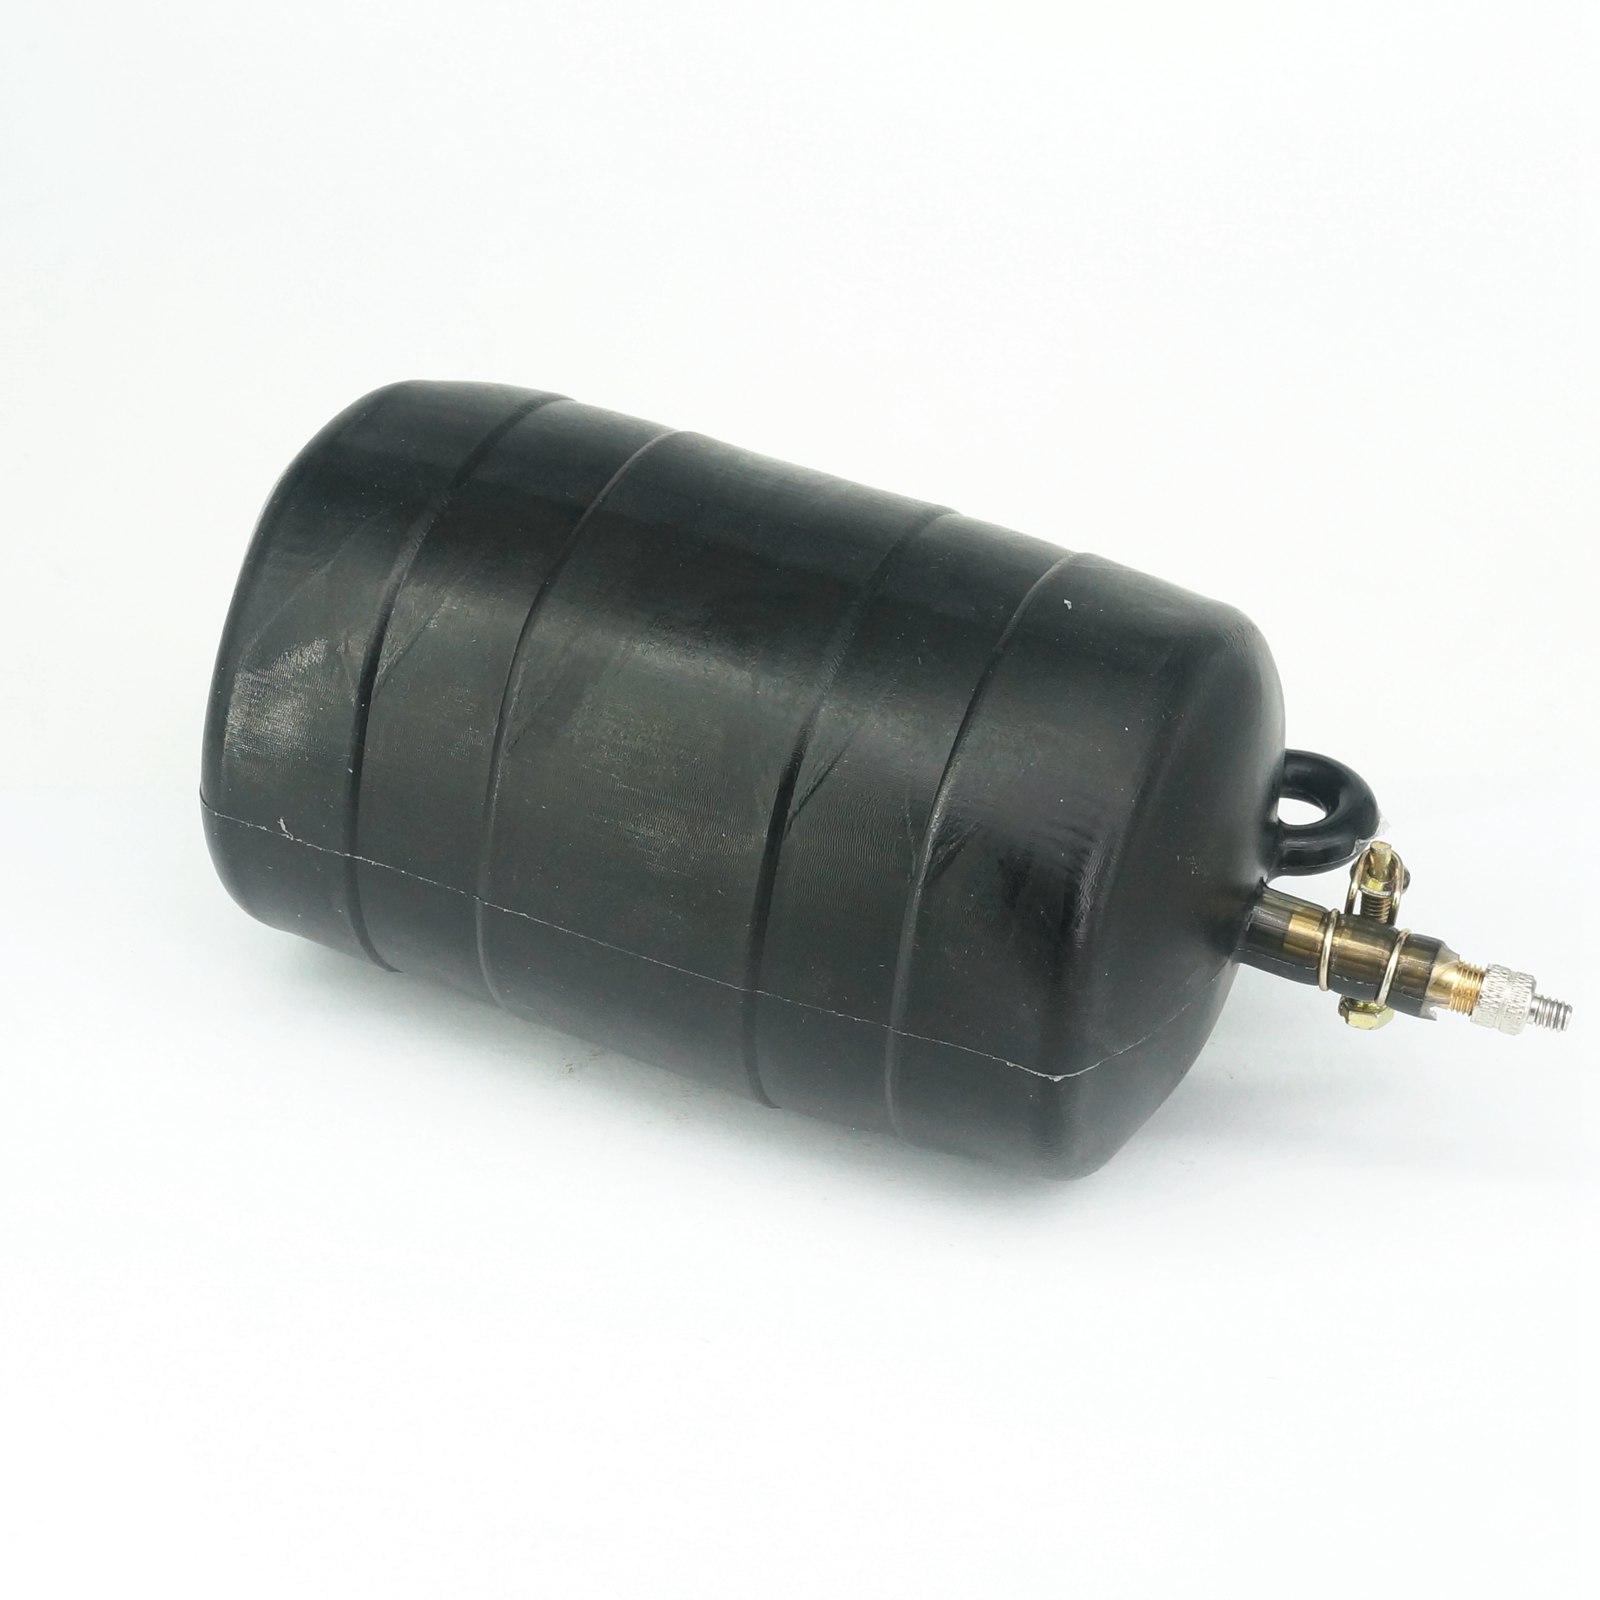 Fit Pipe Inner Diameter 96-110mm 4&quot; Natural Natural Rubber Drain Air Bag Inflatable Bung Stop Plug Block 0.25 Bar